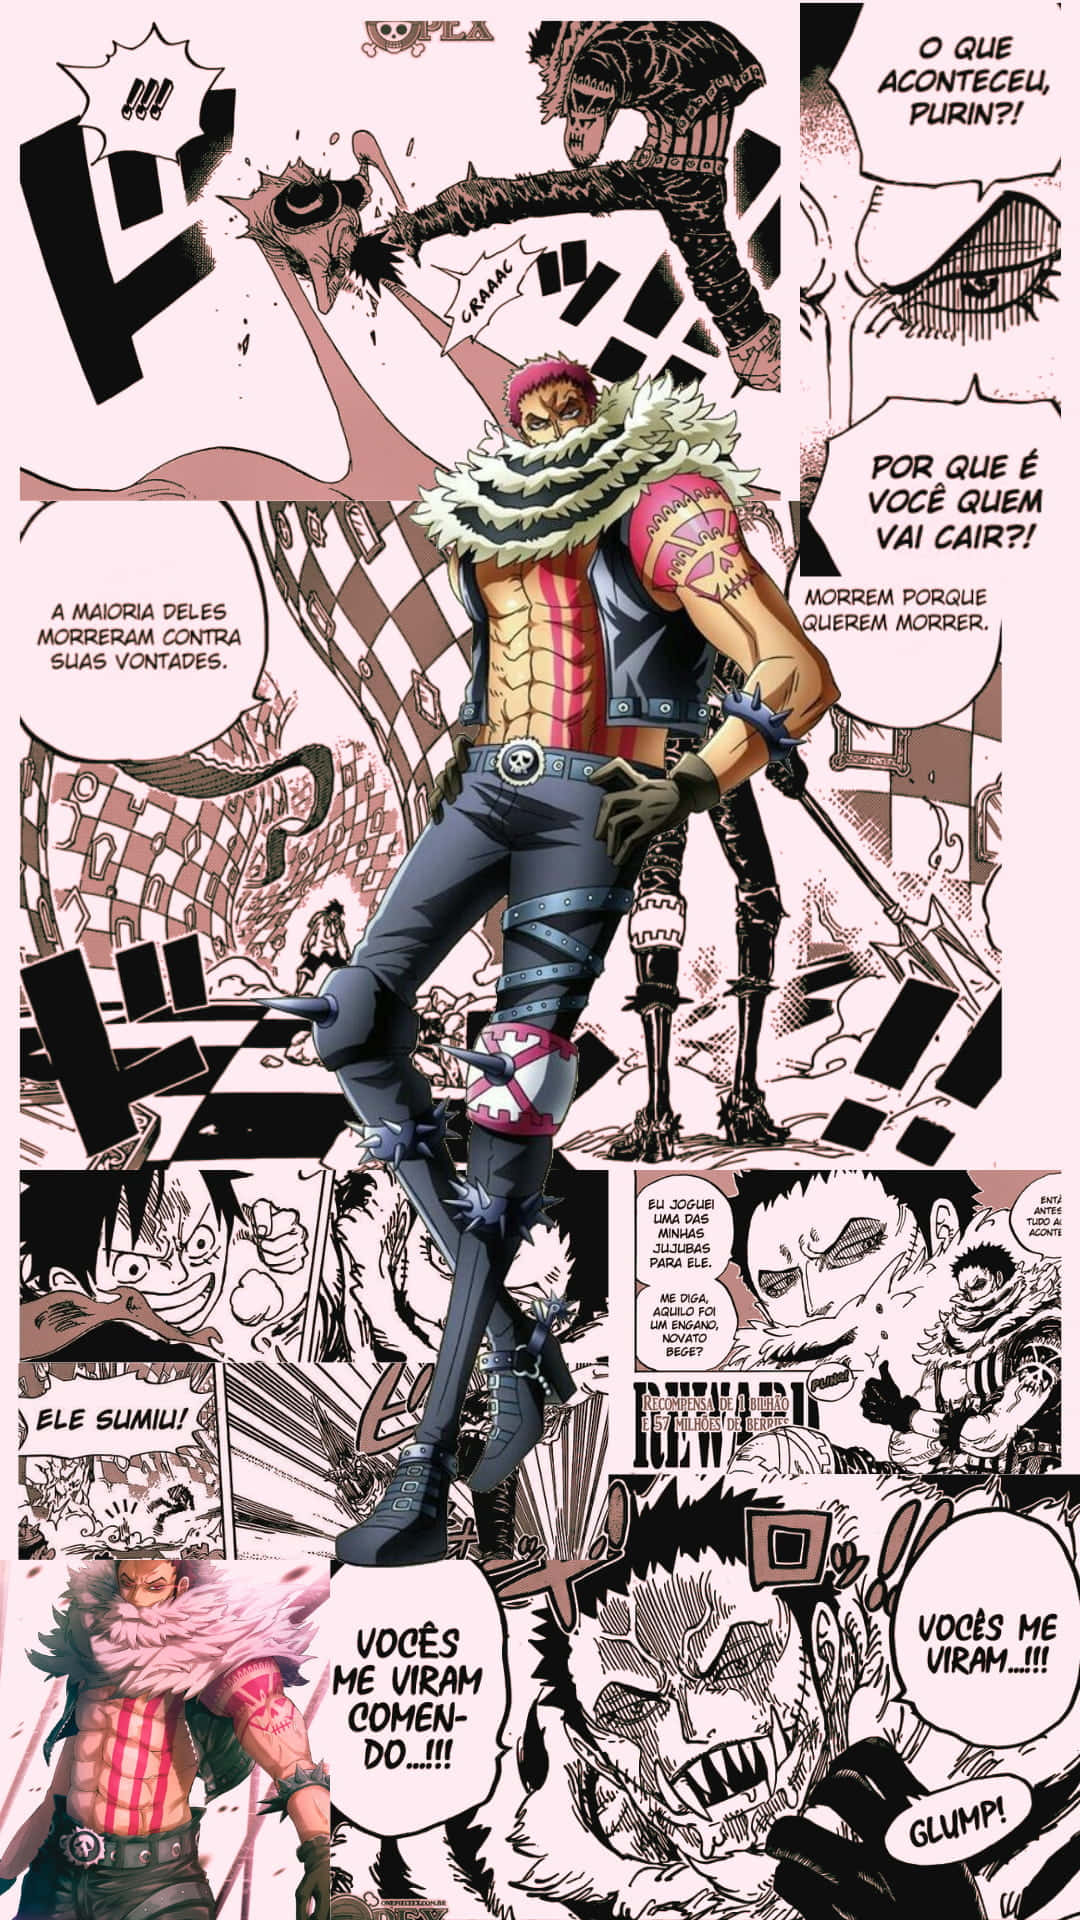 Manga Characters at Dusk Wallpaper